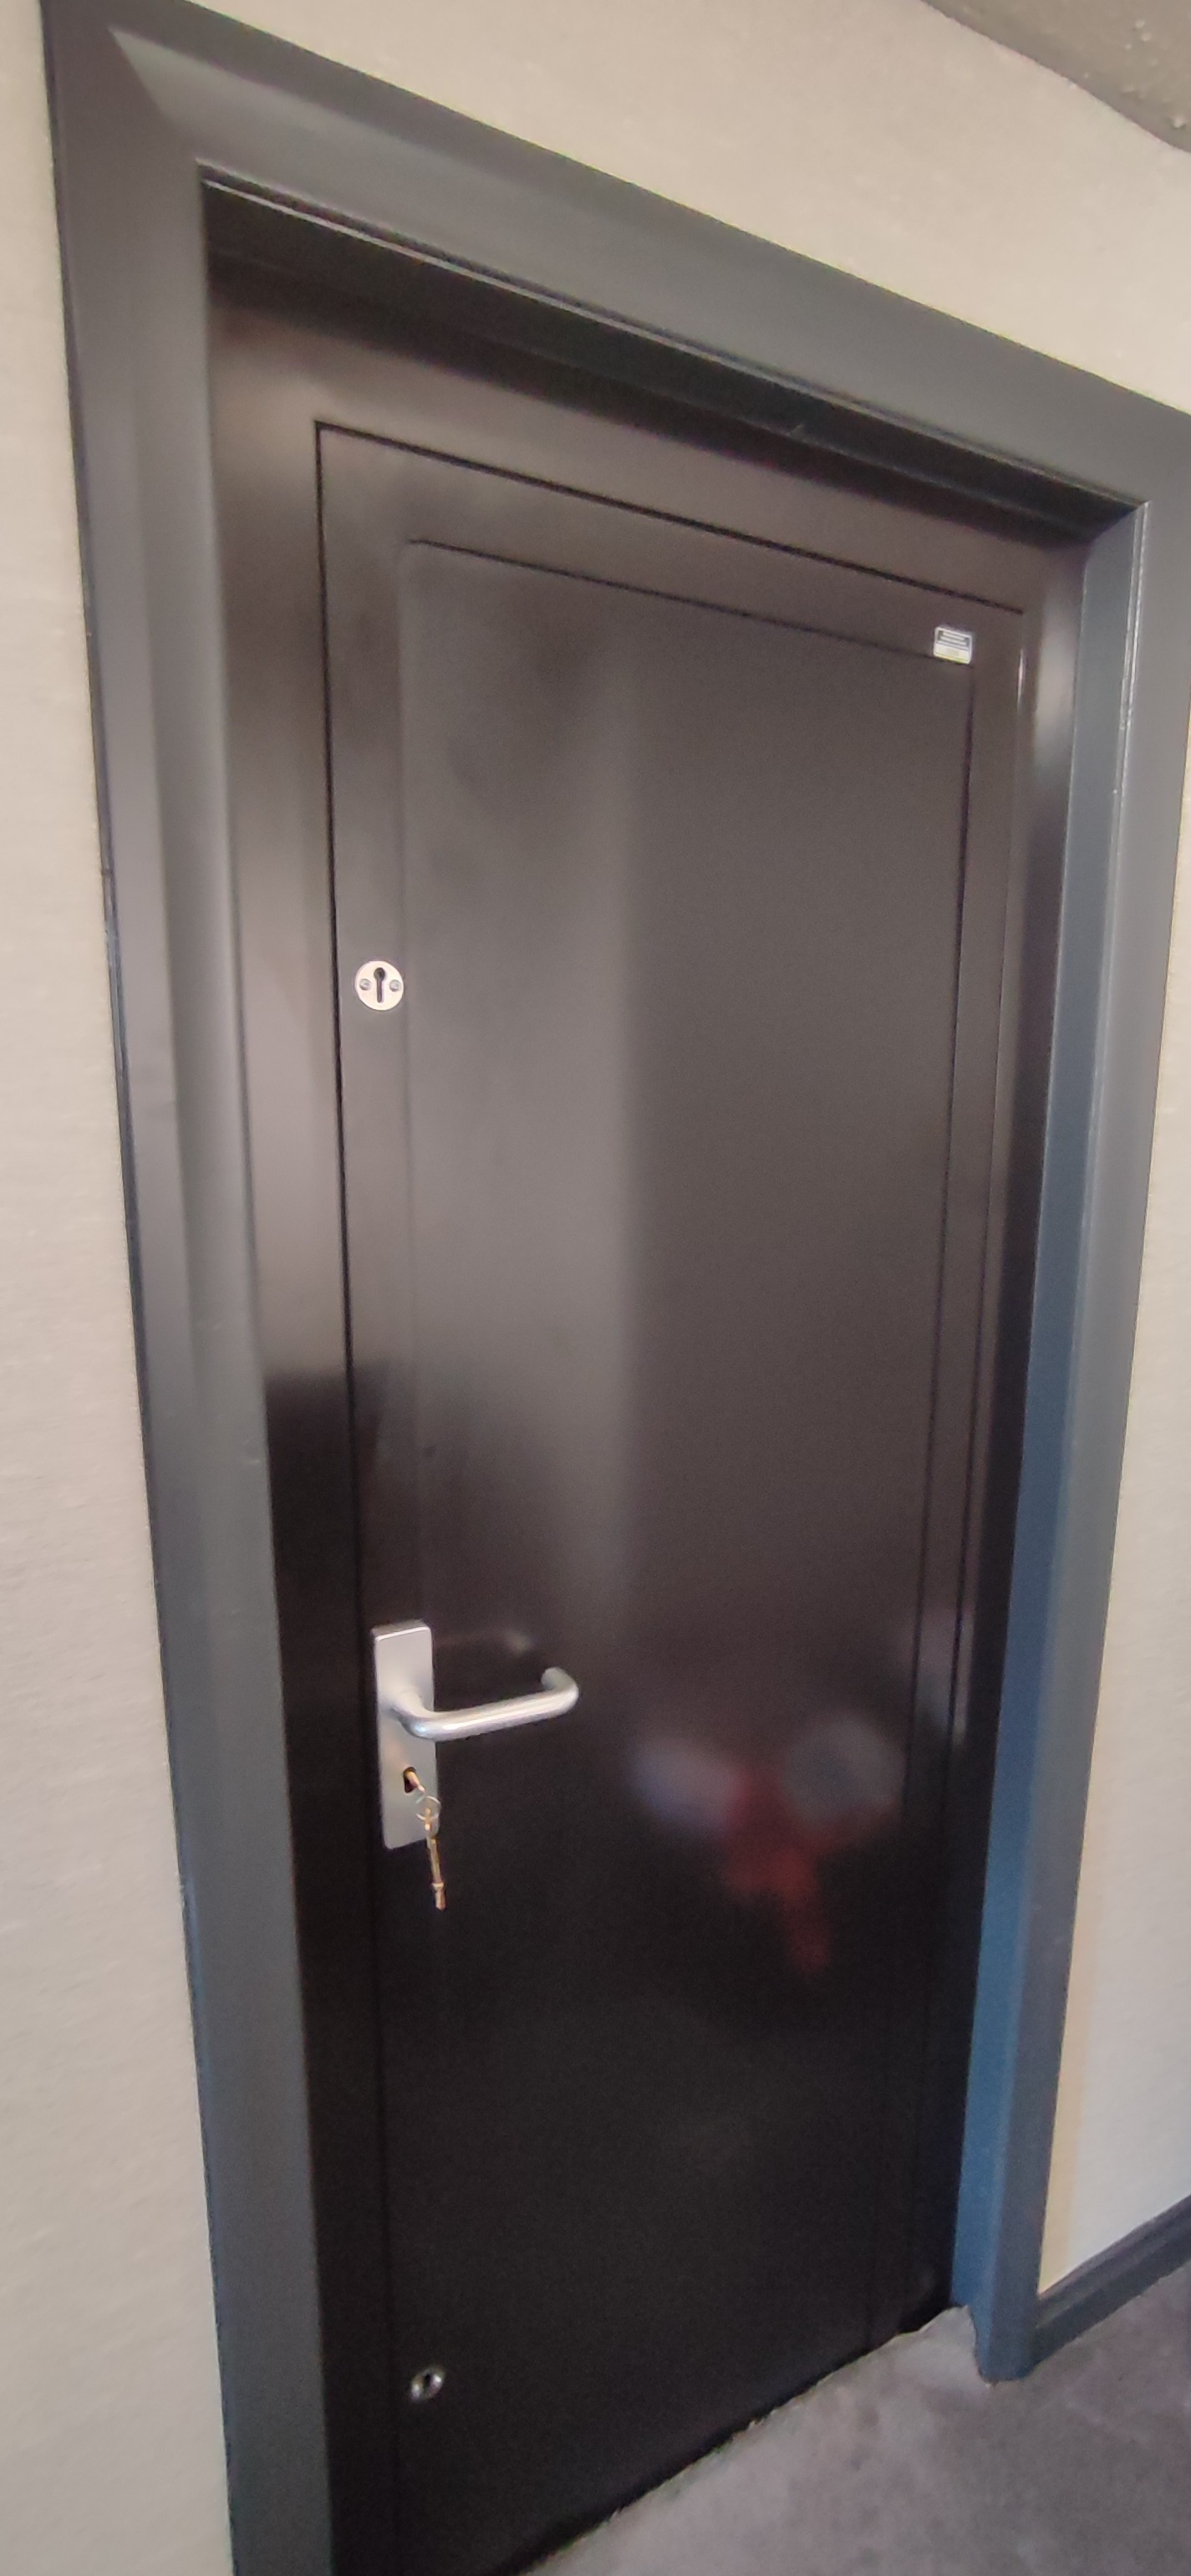 Techniko solid security steel door